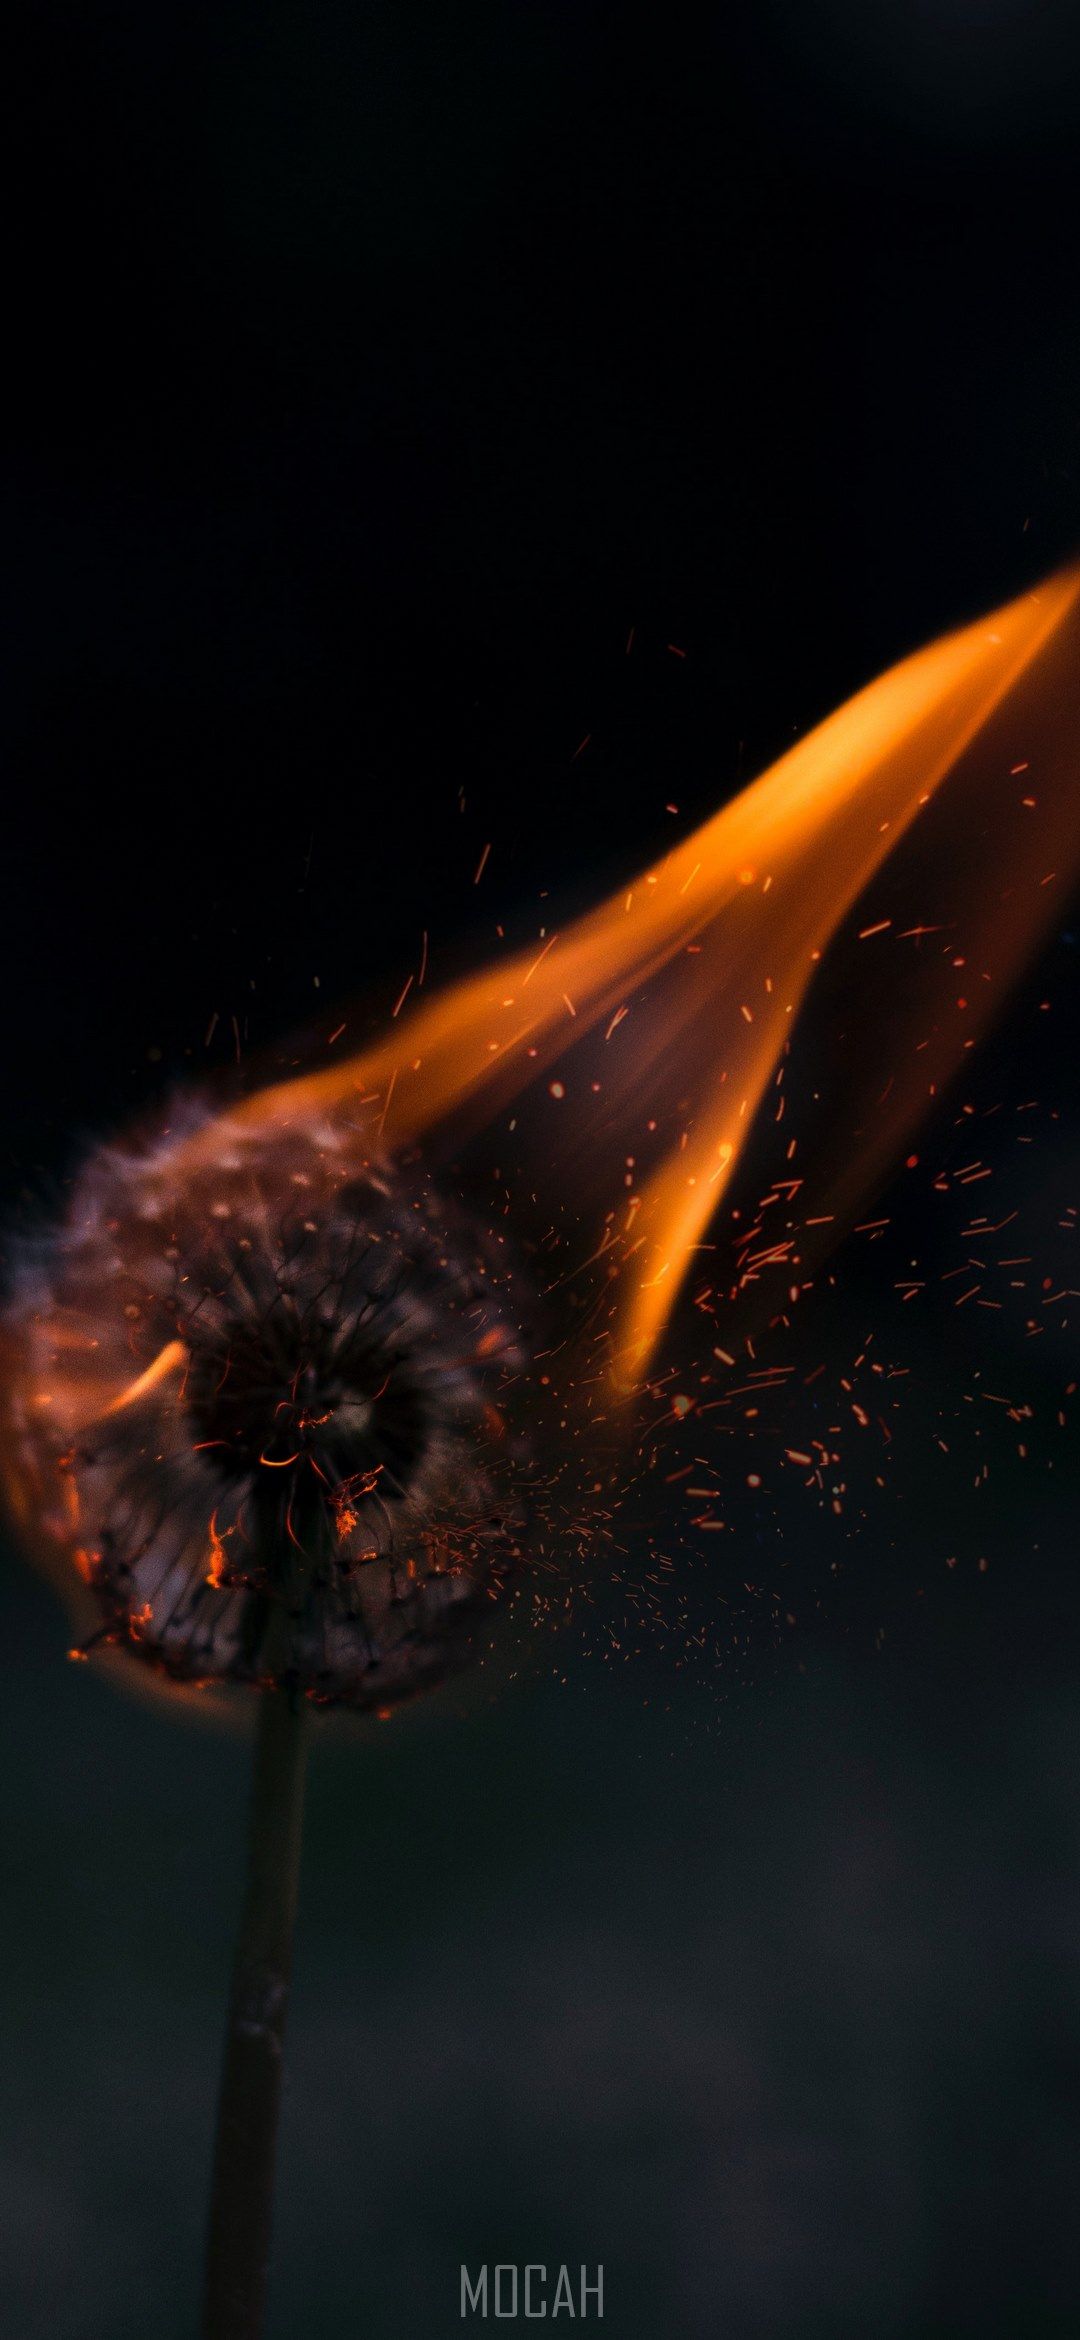 a dandelion on fire, burning dandelion, Oppo Reno 5G wallpaper HD free download, 1080x2340